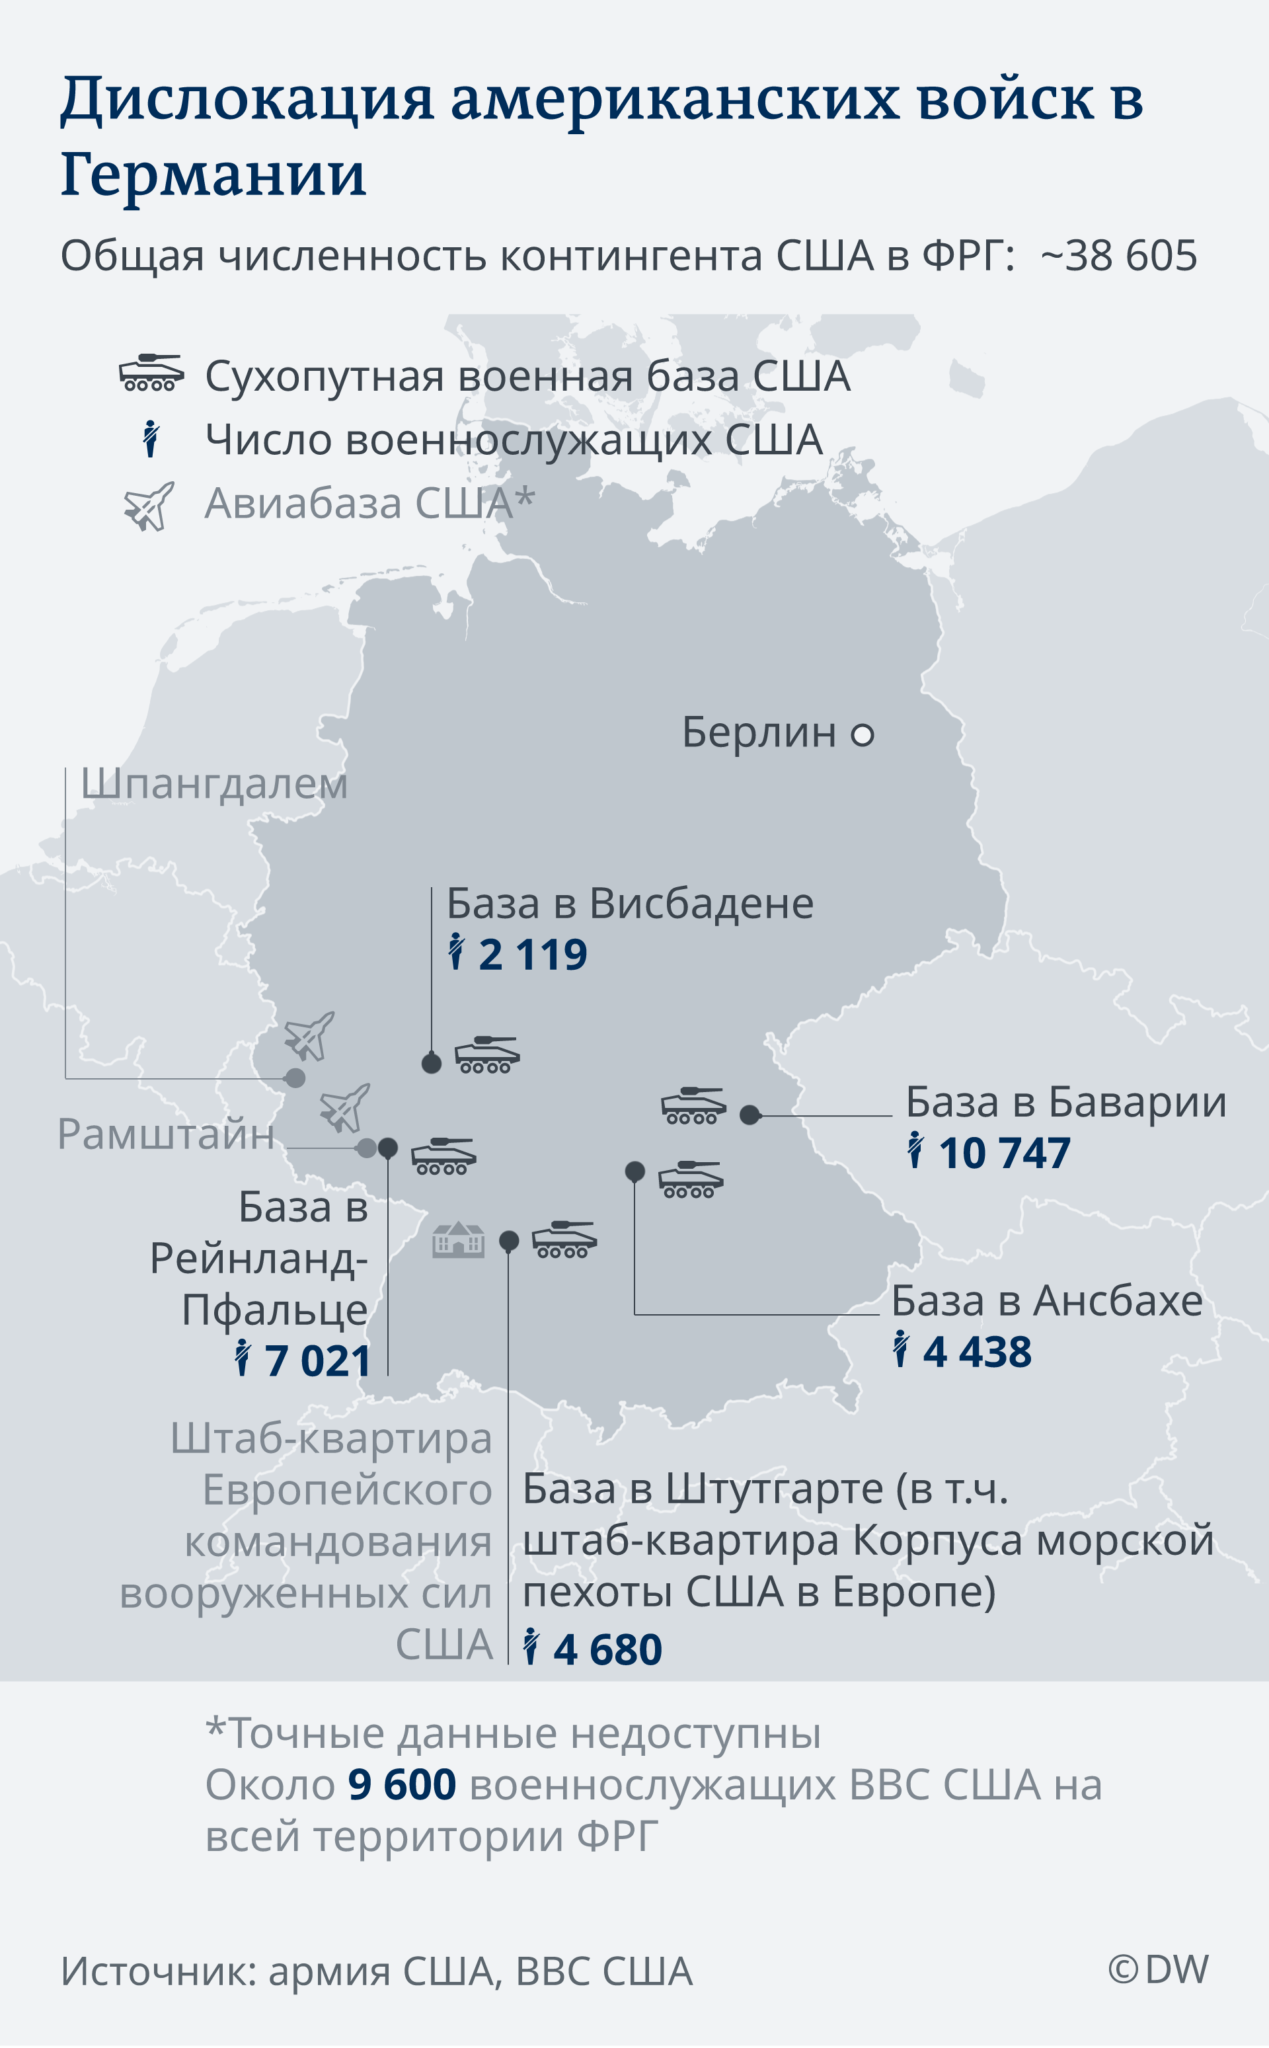 Численность нато в европе. Американские военные базы в Германии карта. НАТО численность войск 2020 в Европе. Карта баз США В Германии. Американские военные базы в Германии количество.